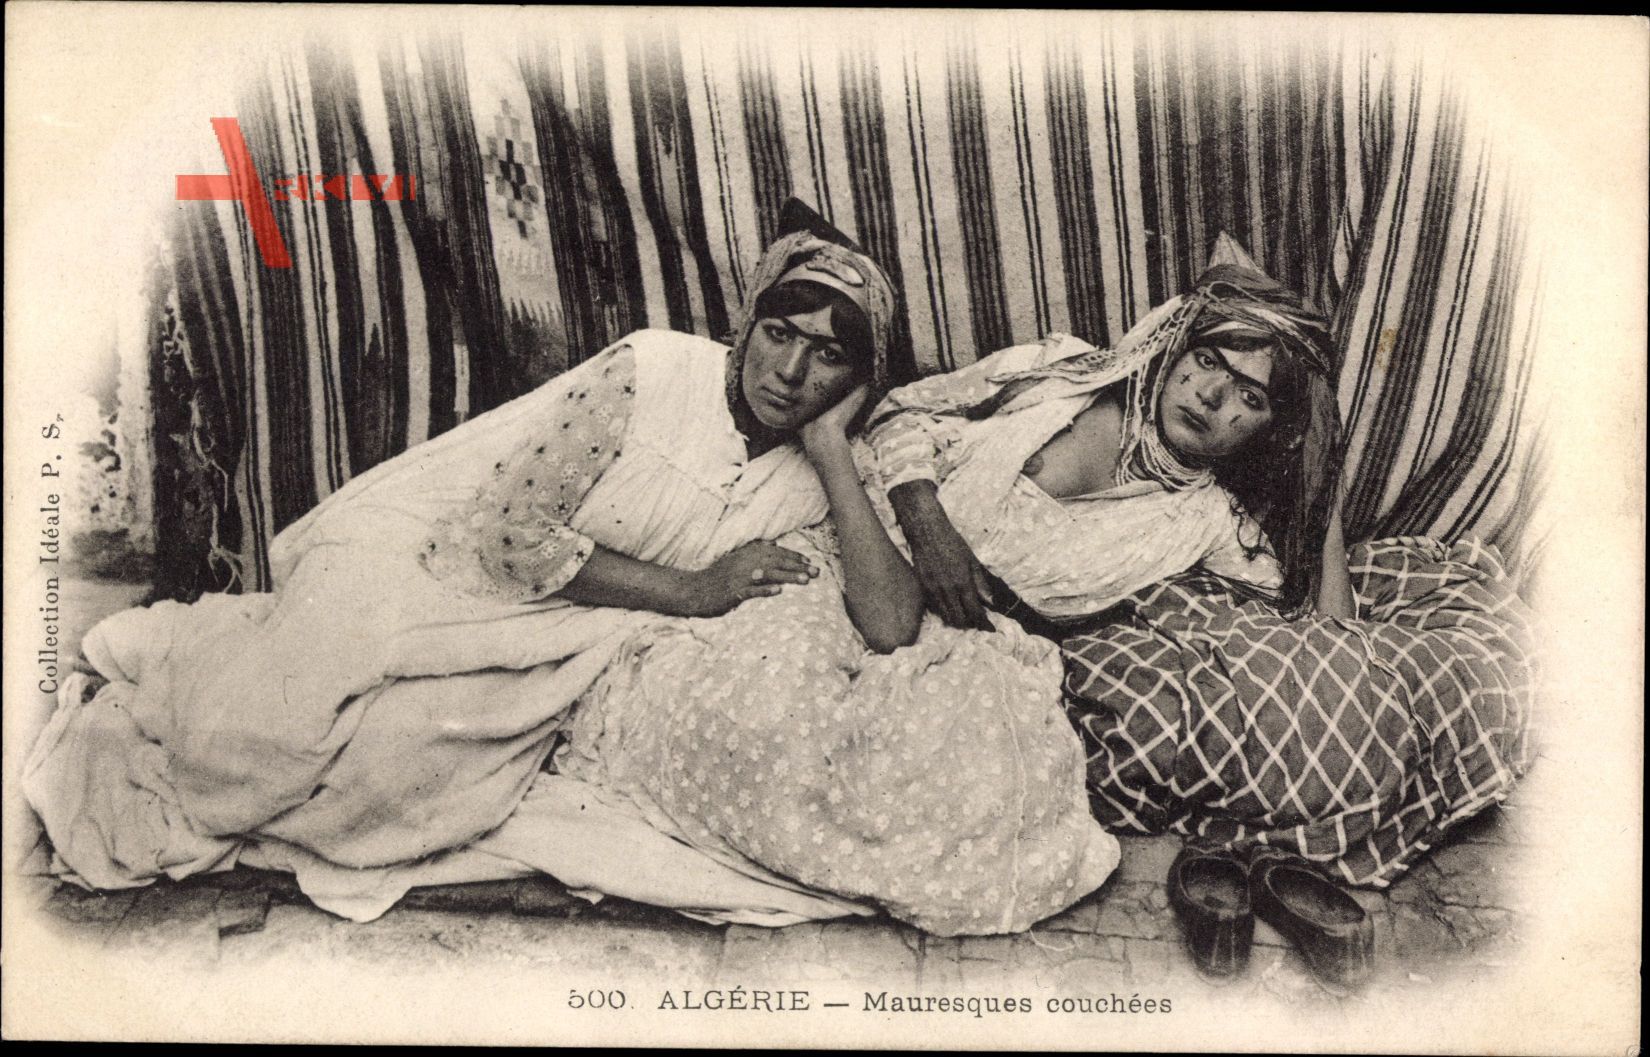 Algerien, Mauresques couchées, Frauen auf einem Bett, Brust